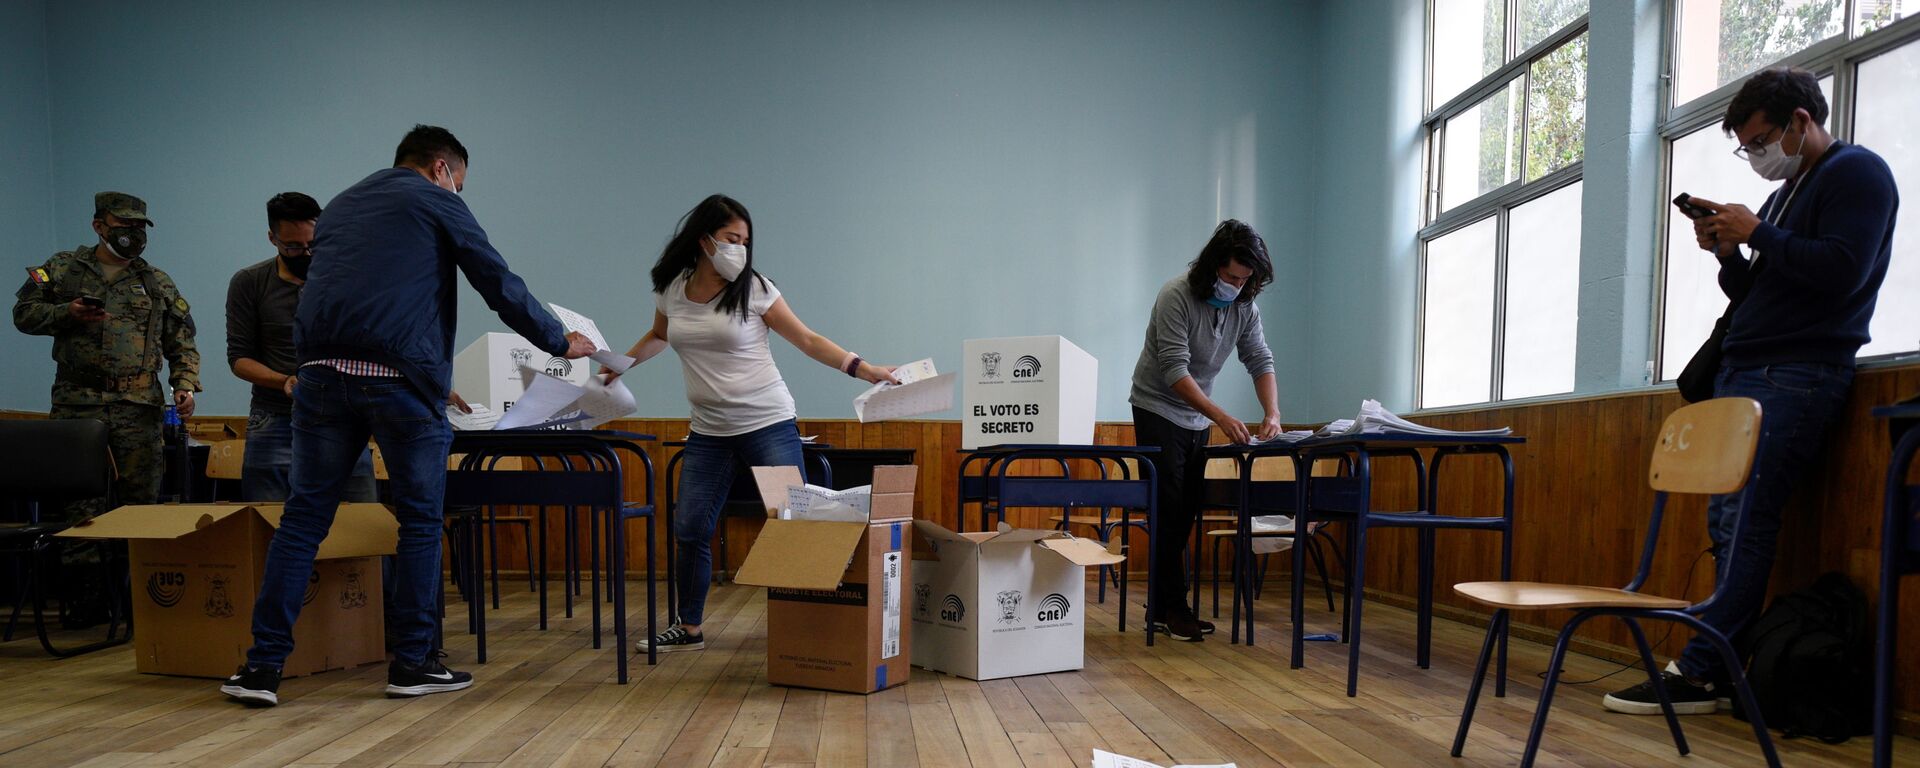 El escrutinio de votos en Ecuador - Sputnik Mundo, 1920, 10.02.2021